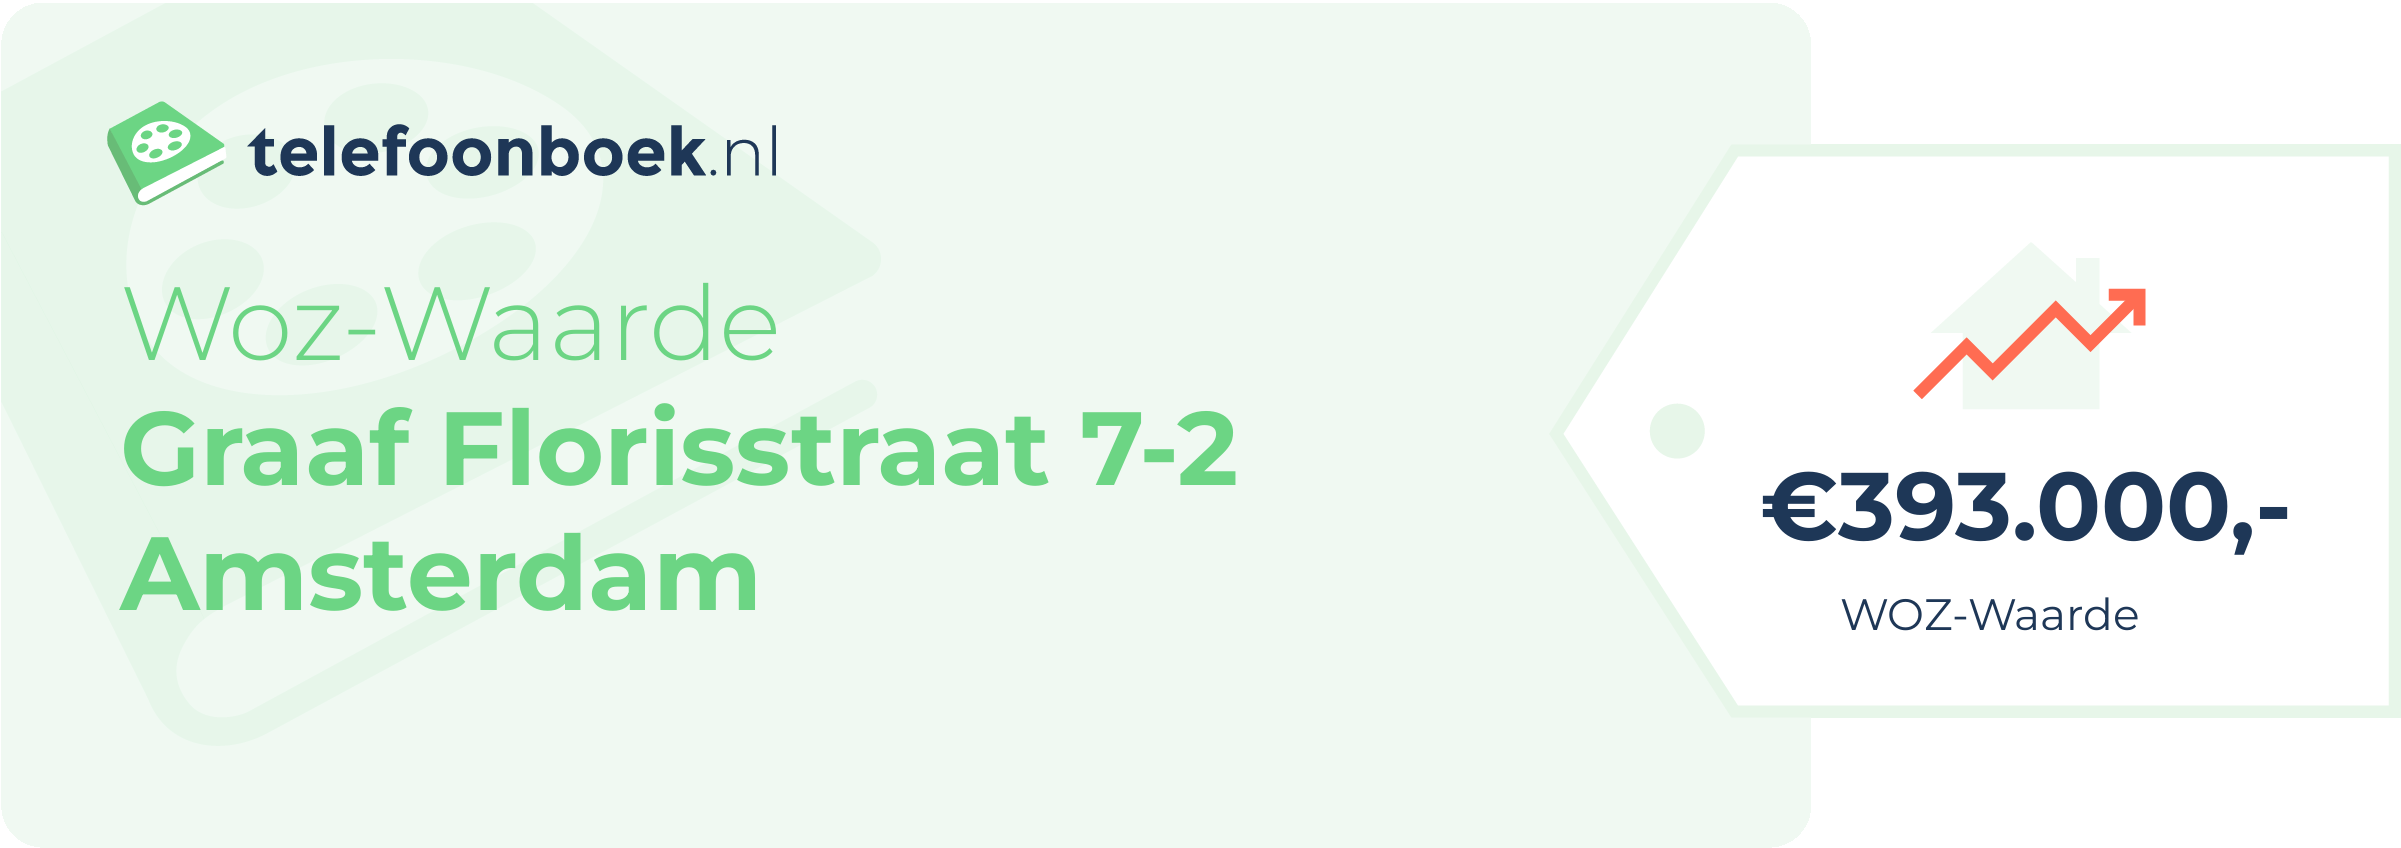 WOZ-waarde Graaf Florisstraat 7-2 Amsterdam